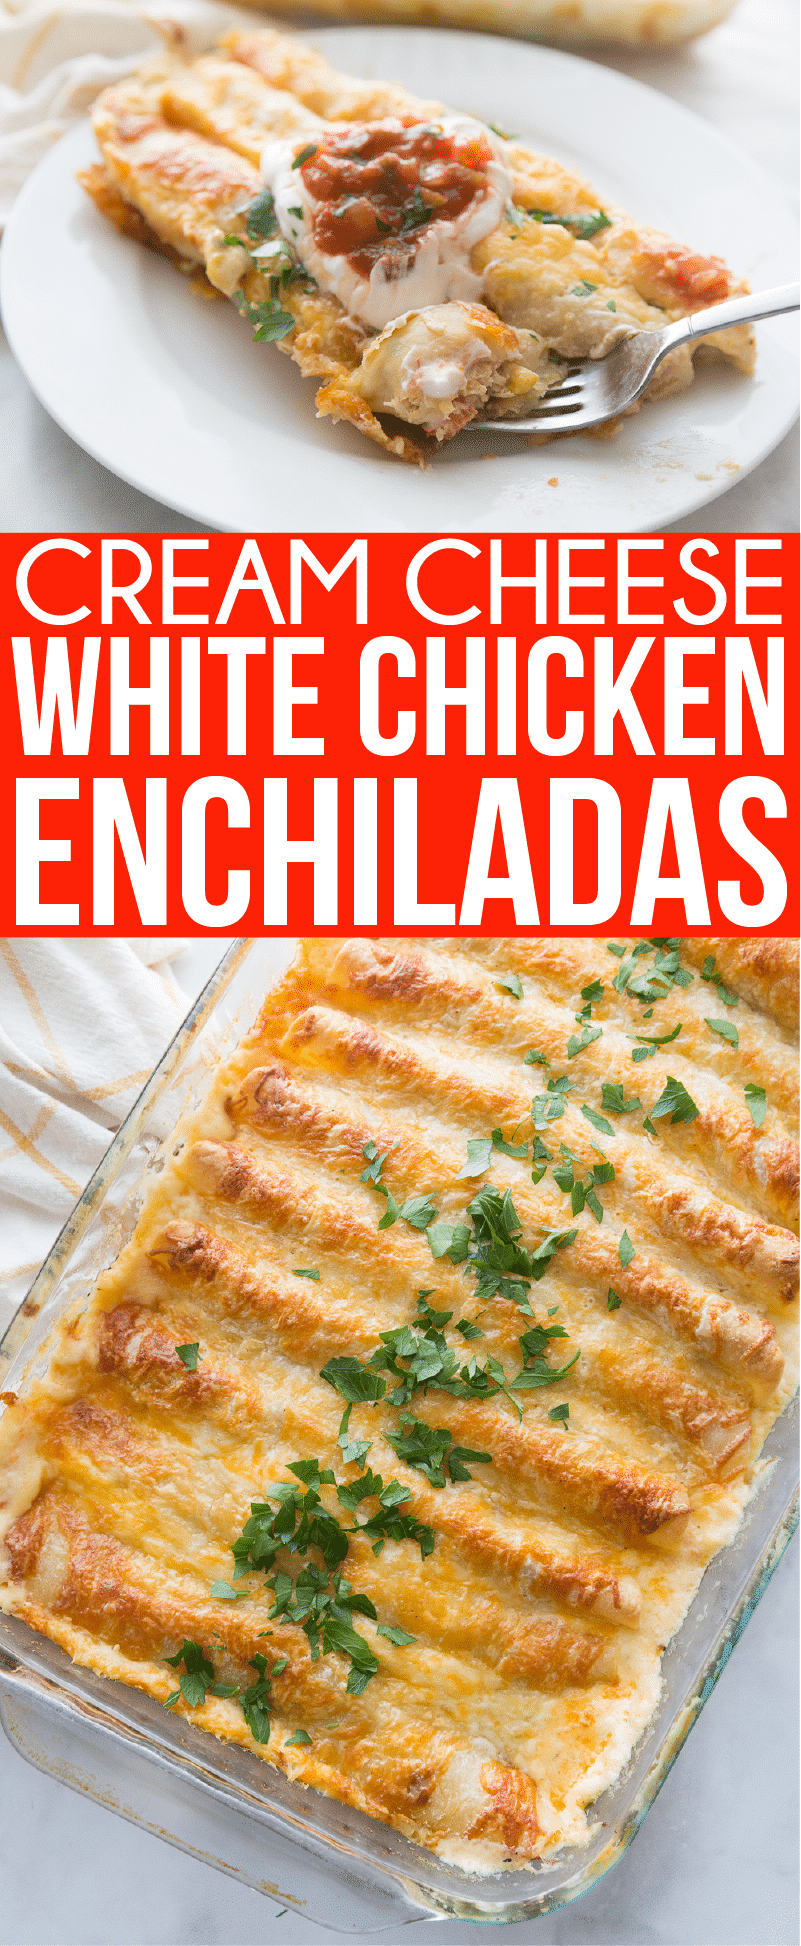 Afbeeldingen van witte kip enchiladas